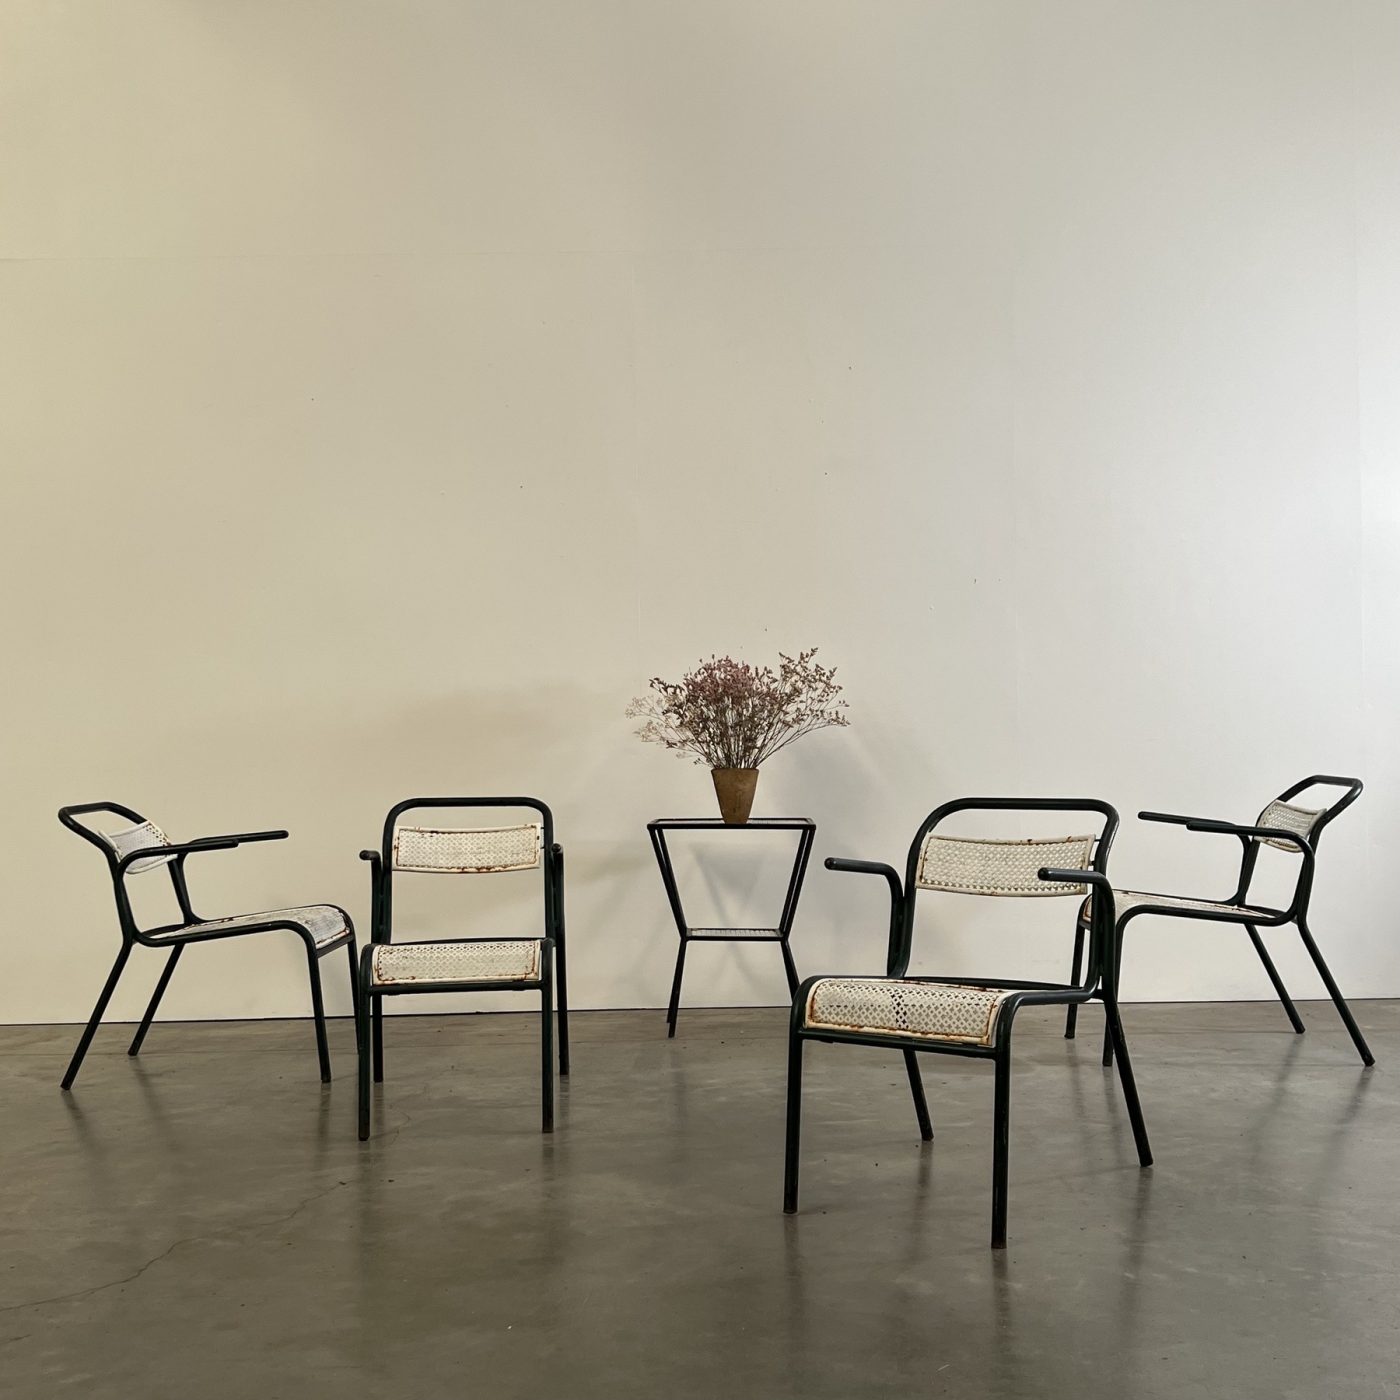 objet-vagabond-garden-chairs0009